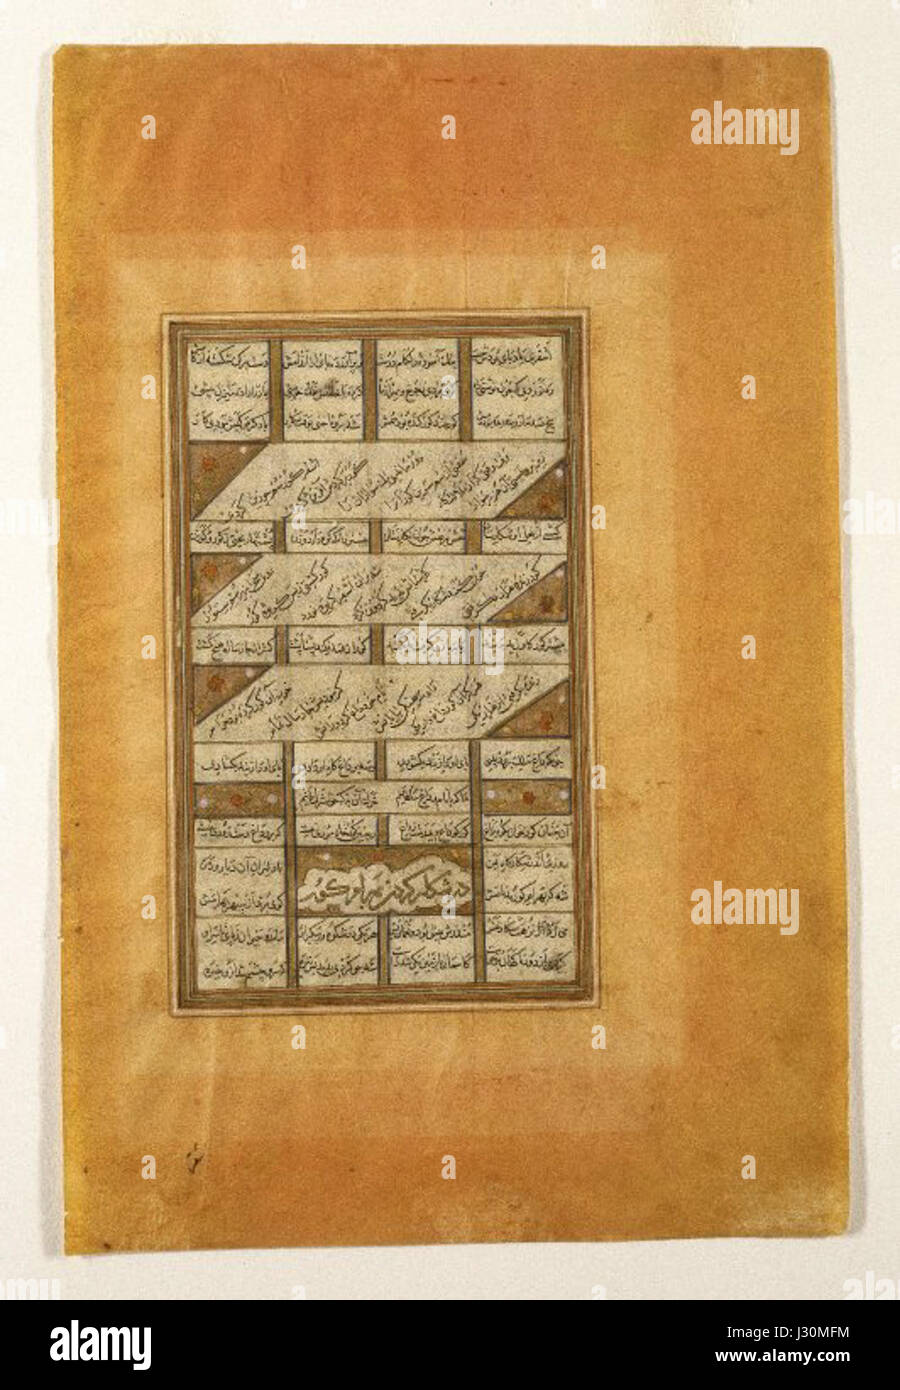 Brooklyn Museum - Bahram Gur auf der Jagd-Seite aus der Haft Paykar (sieben Porträts) aus einer Handschrift von Chadidscha (Quintett) von Nizami (gest. 1209) Stockfoto